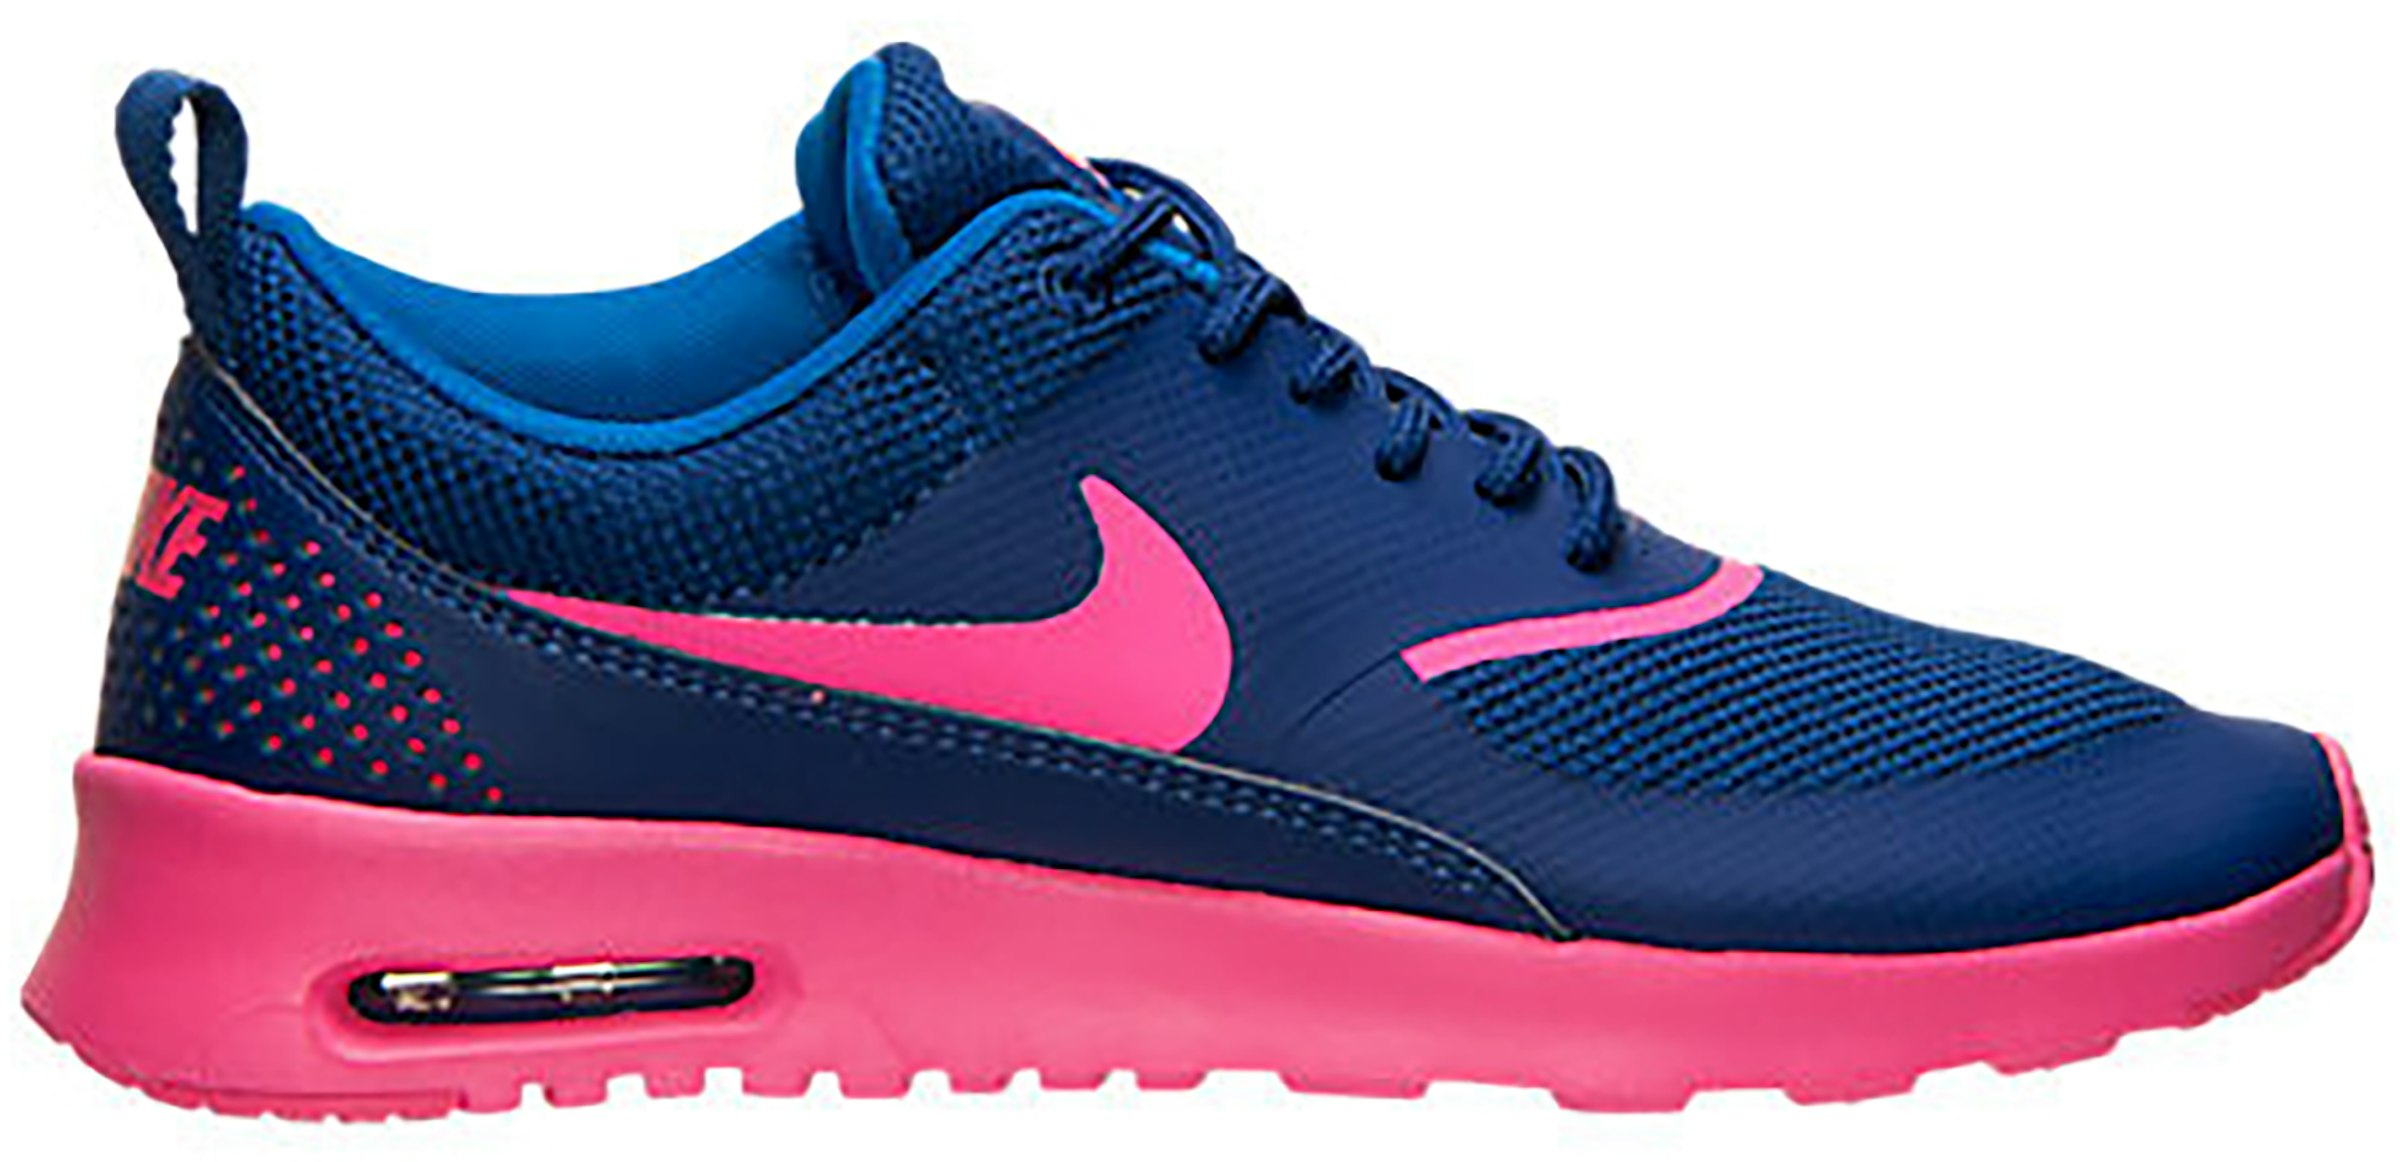 Haz lo mejor que pueda granero rueda Nike Air Max Thea Deep Royal Blue Hyper Pink (Women's) - 599409-405 - US